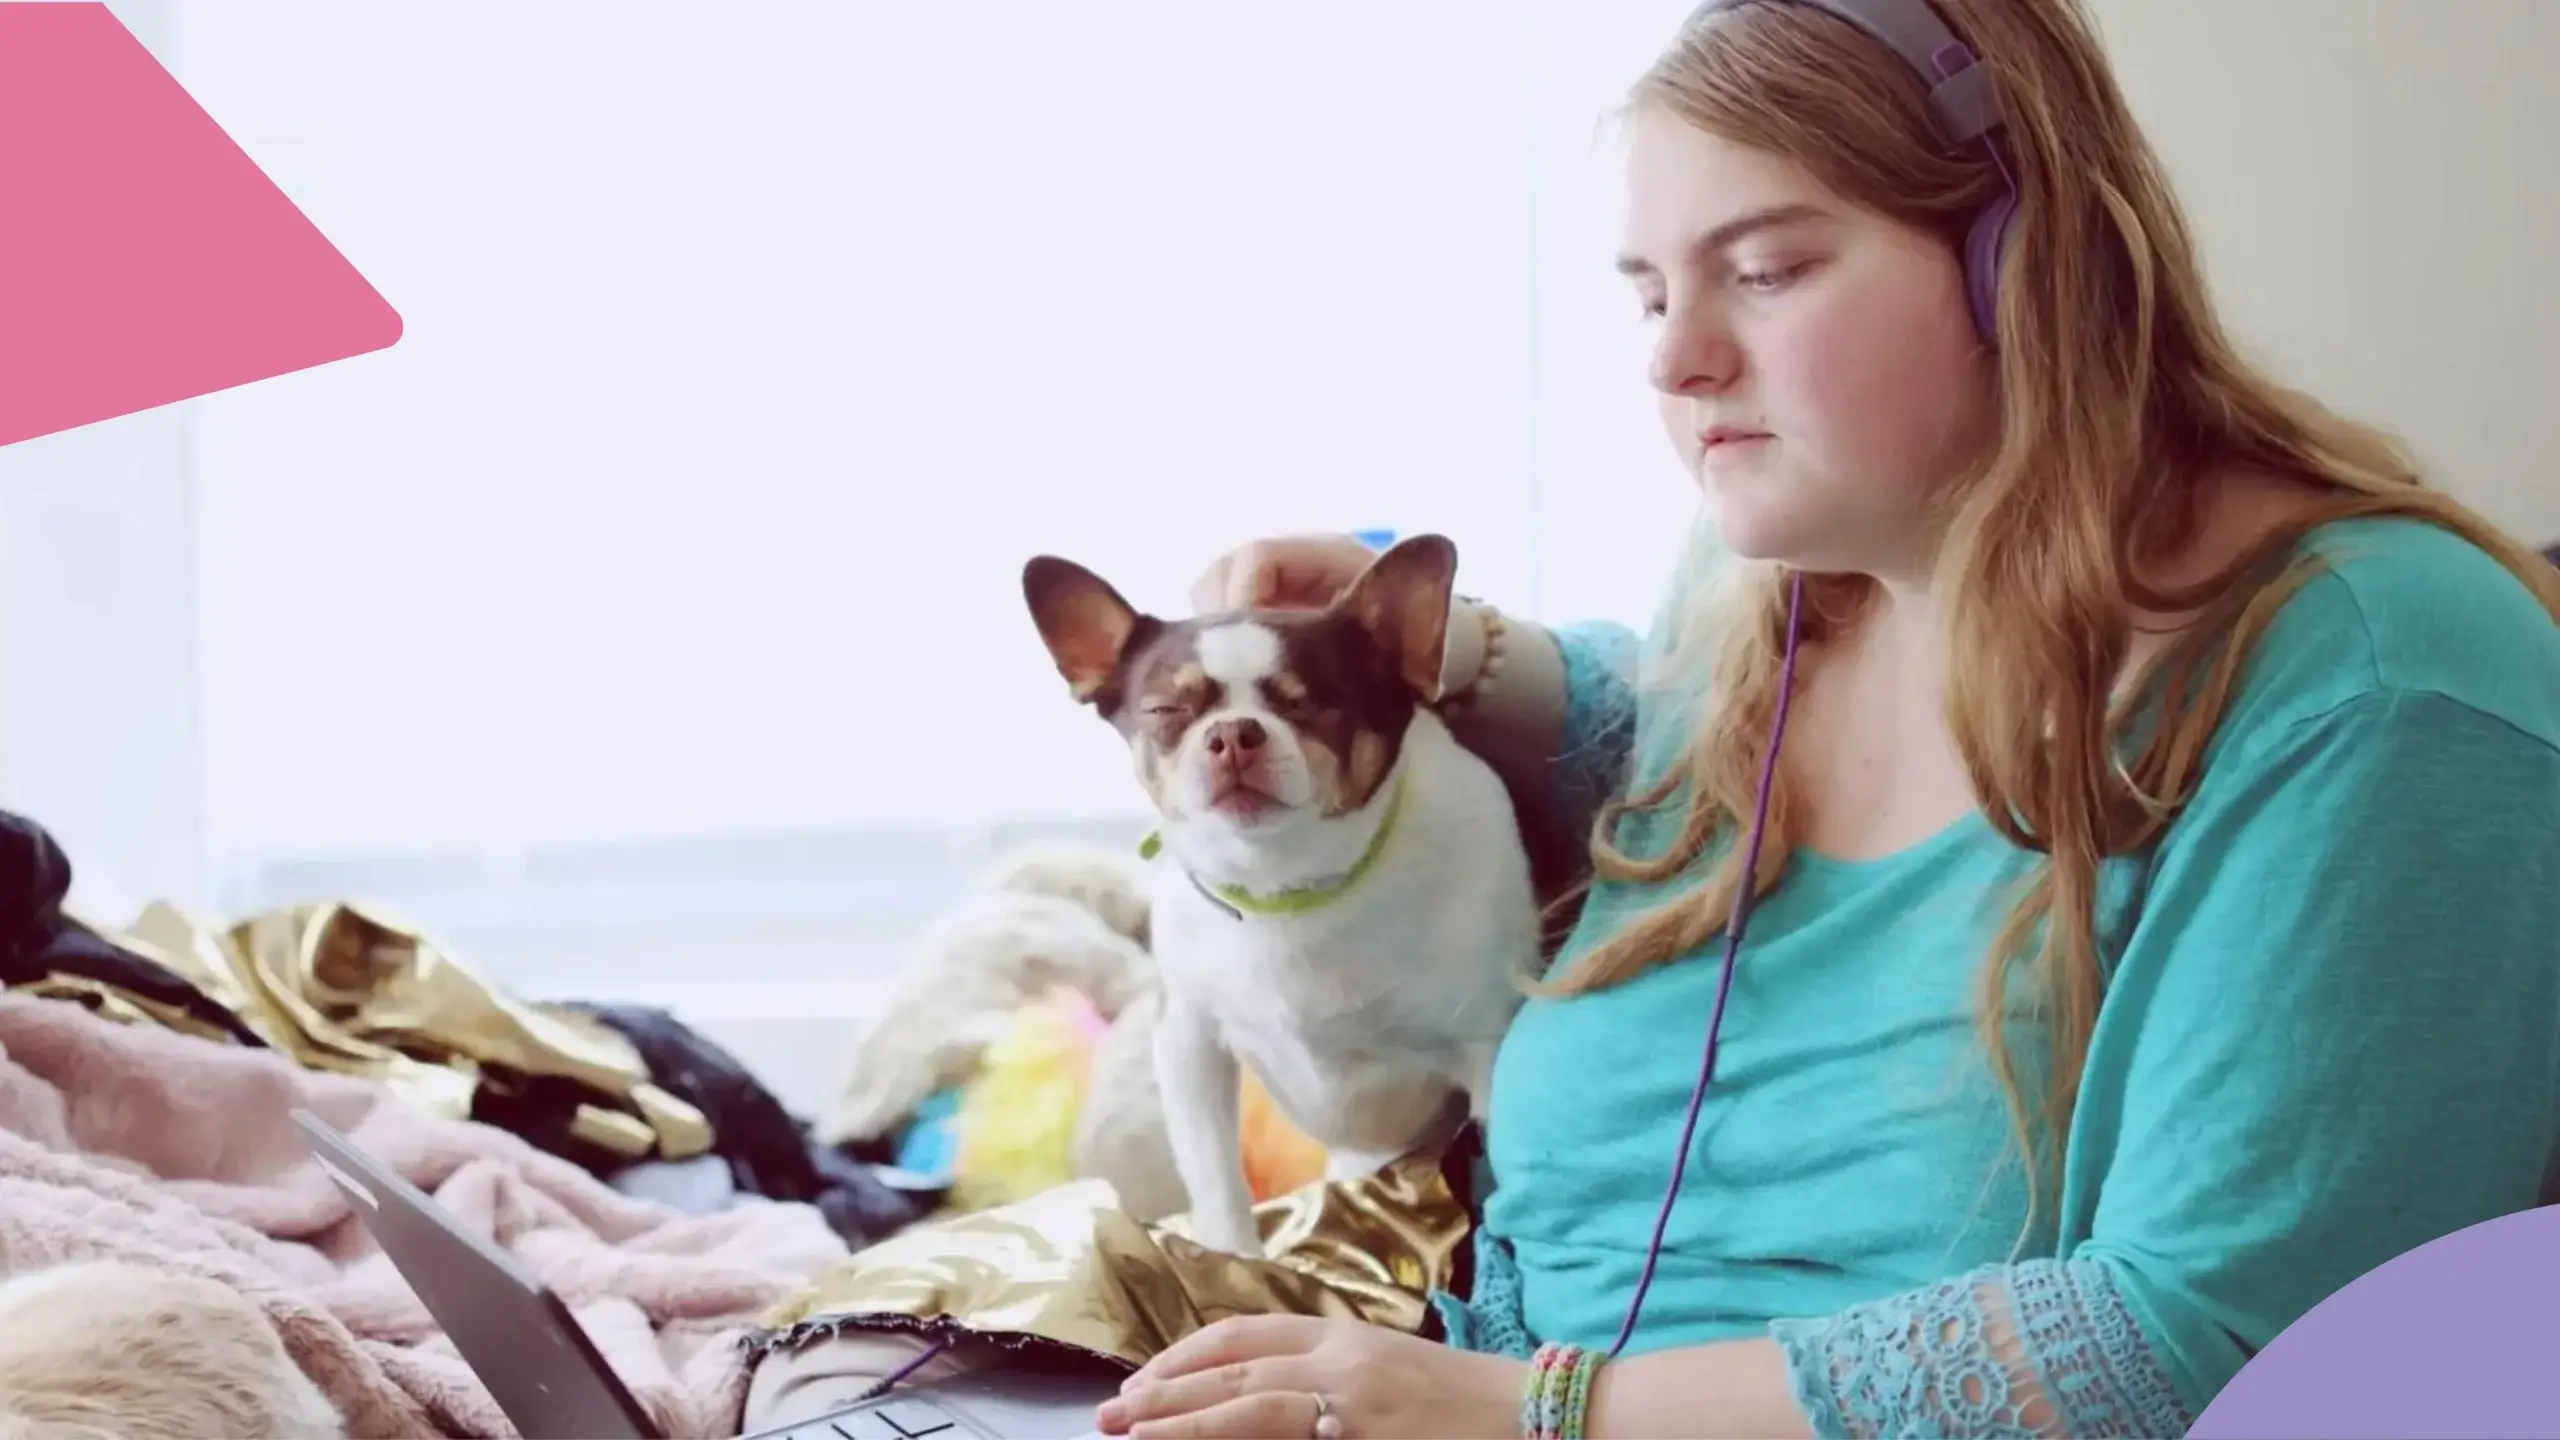 Mulher escutando música em um laptop. Ao seu lado, um cachorrinho recebe carinho dela